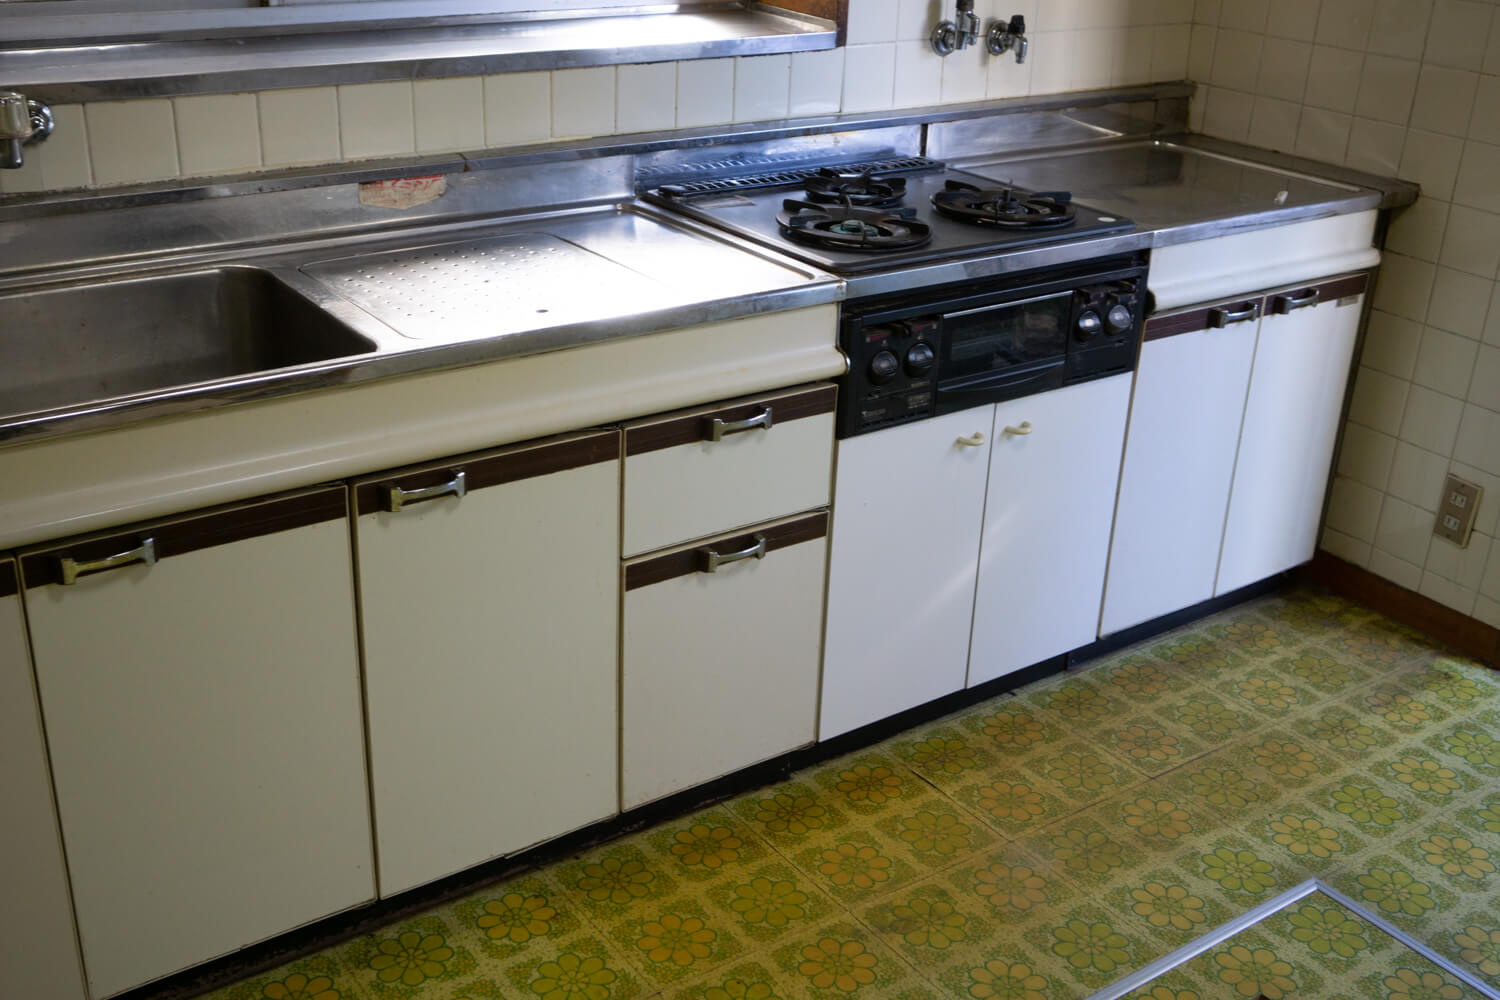 DIY】古いキッチンを劇的にリメイクする方法 | 99% DIY -DIYブログ-